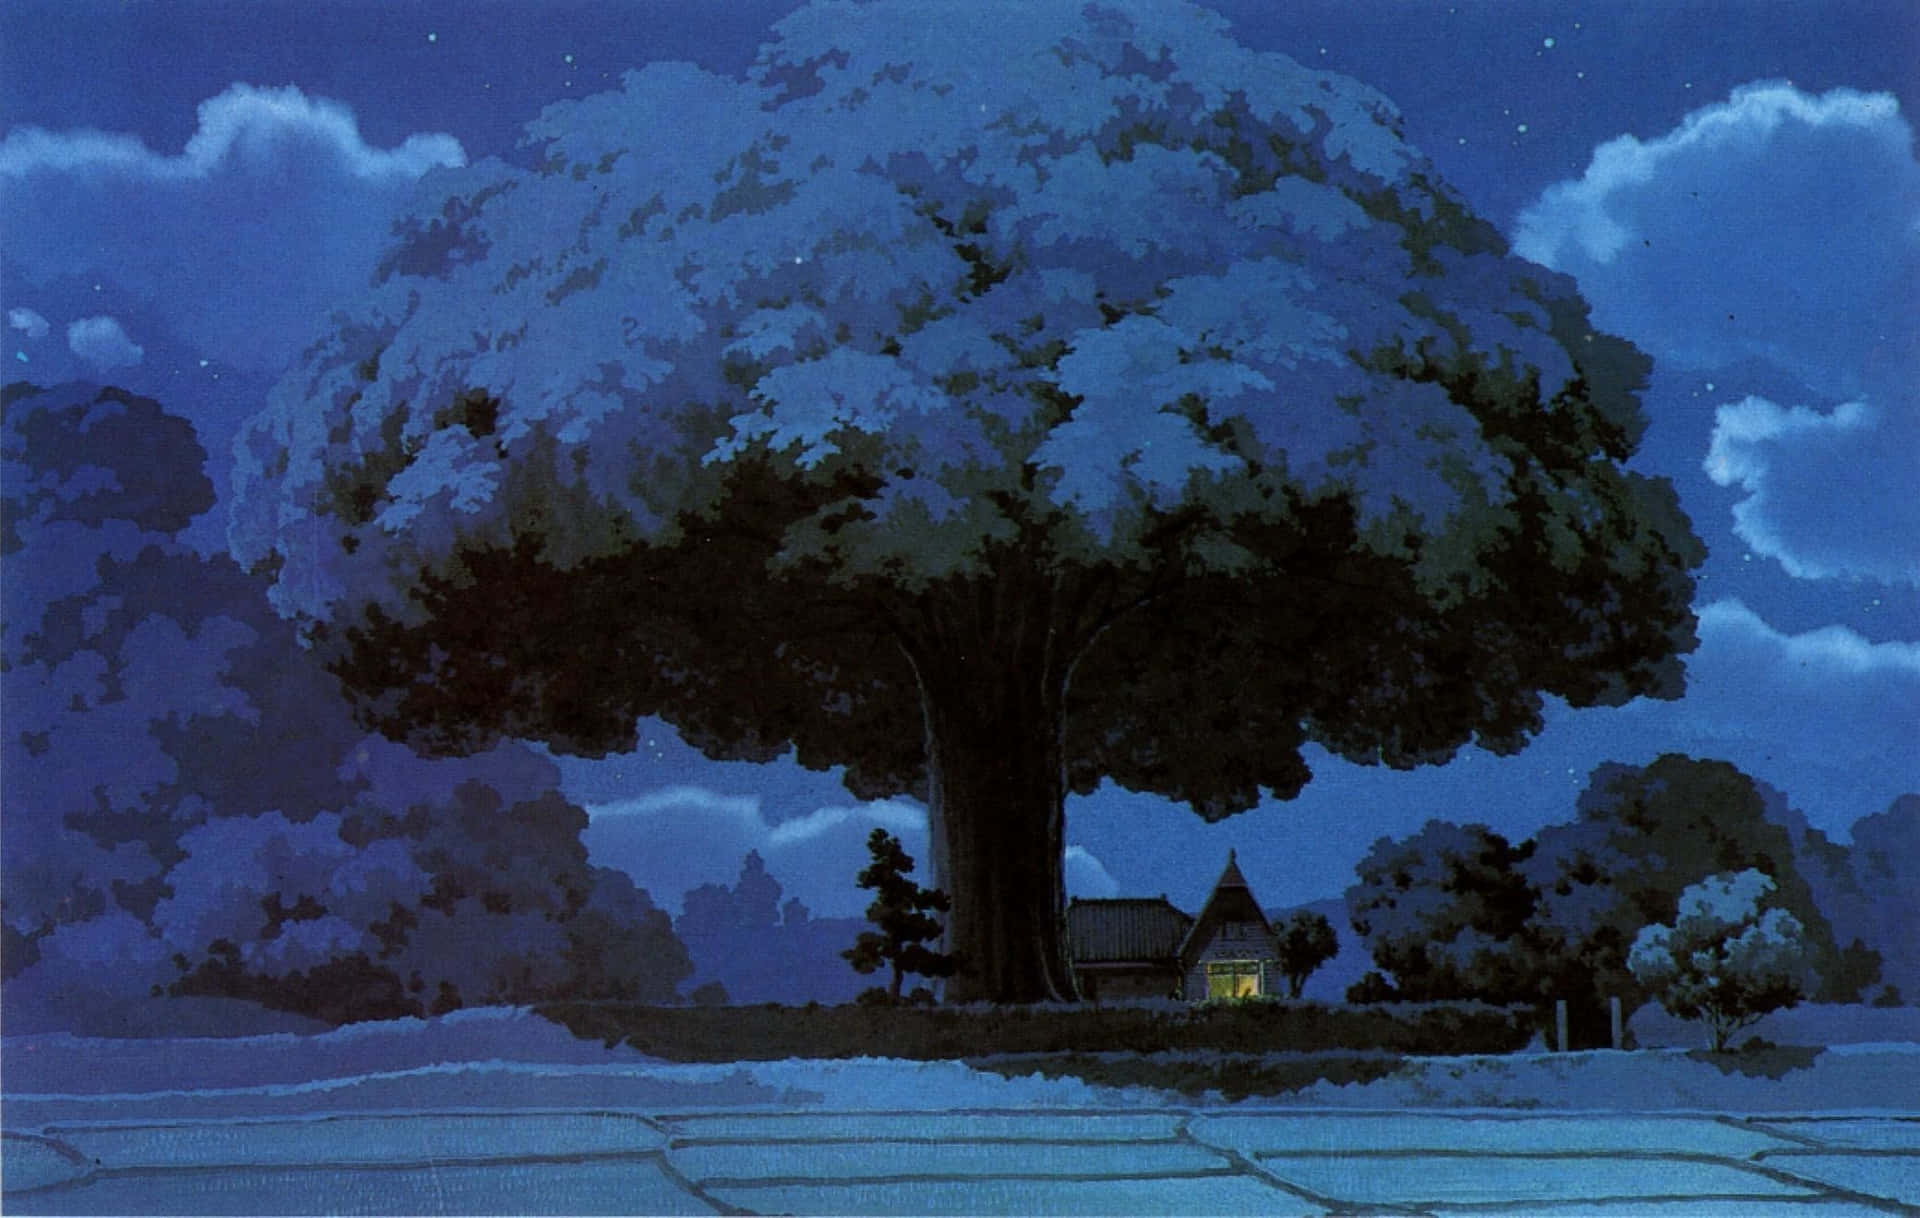 Machensie Einen Virtuellen Spaziergang Durch Das Bezaubernde Studio Ghibli-universum Mit Diesem Ästhetischen Desktop-hintergrundbild. Wallpaper